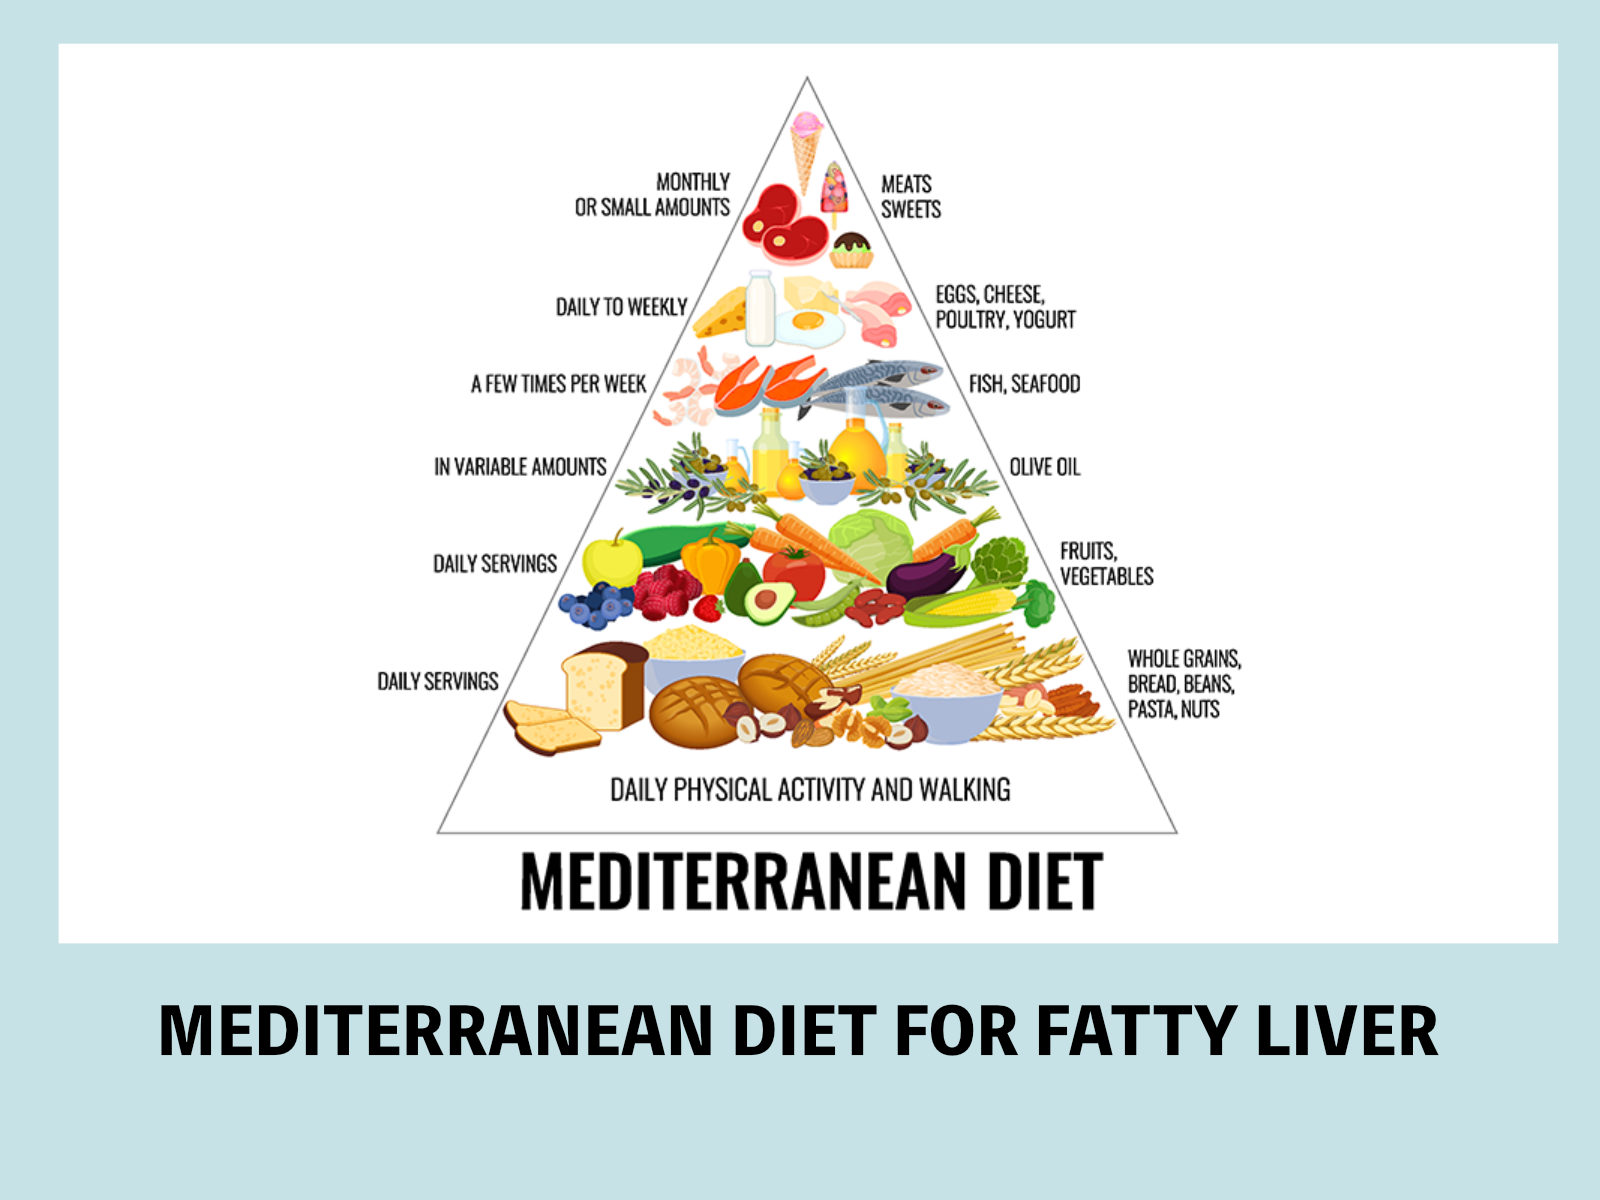 MEDITERRANEAN DIET FOR FATTY LIVER